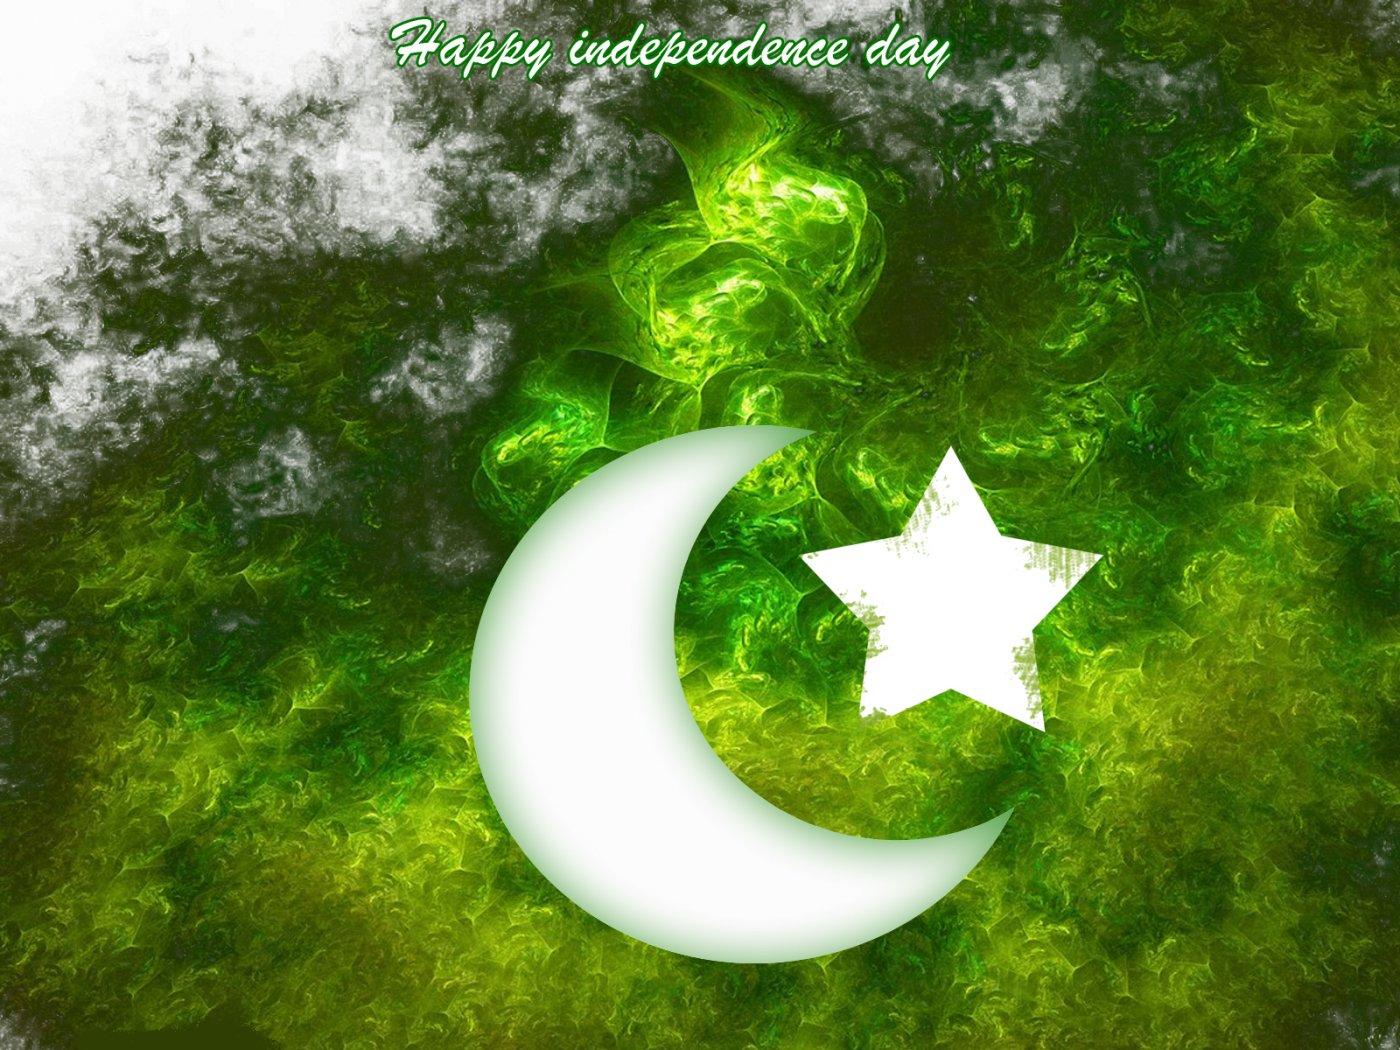 https://blogger.googleusercontent.com/img/b/R29vZ2xl/AVvXsEjH0kackG9fOT8RYIiA2EfgG4VC9lnkt1RHCYSHnxnMtx7IuekiPqtdQKHzQBq3YO9QaQbgP3Z0pQ3KZPiIkOzy26bGT9RIpbQ1fTSggpsPiQKdT0J6pv9N07uS4NCBoxwQS6S2sXfDG5Gl/s1600/top+10+HD+Computer+and+Mobile+Wallpapers+Of+Pakistani+Flag+-+Happy+Independance+Day+-+14+august+%25281%2529.jpg